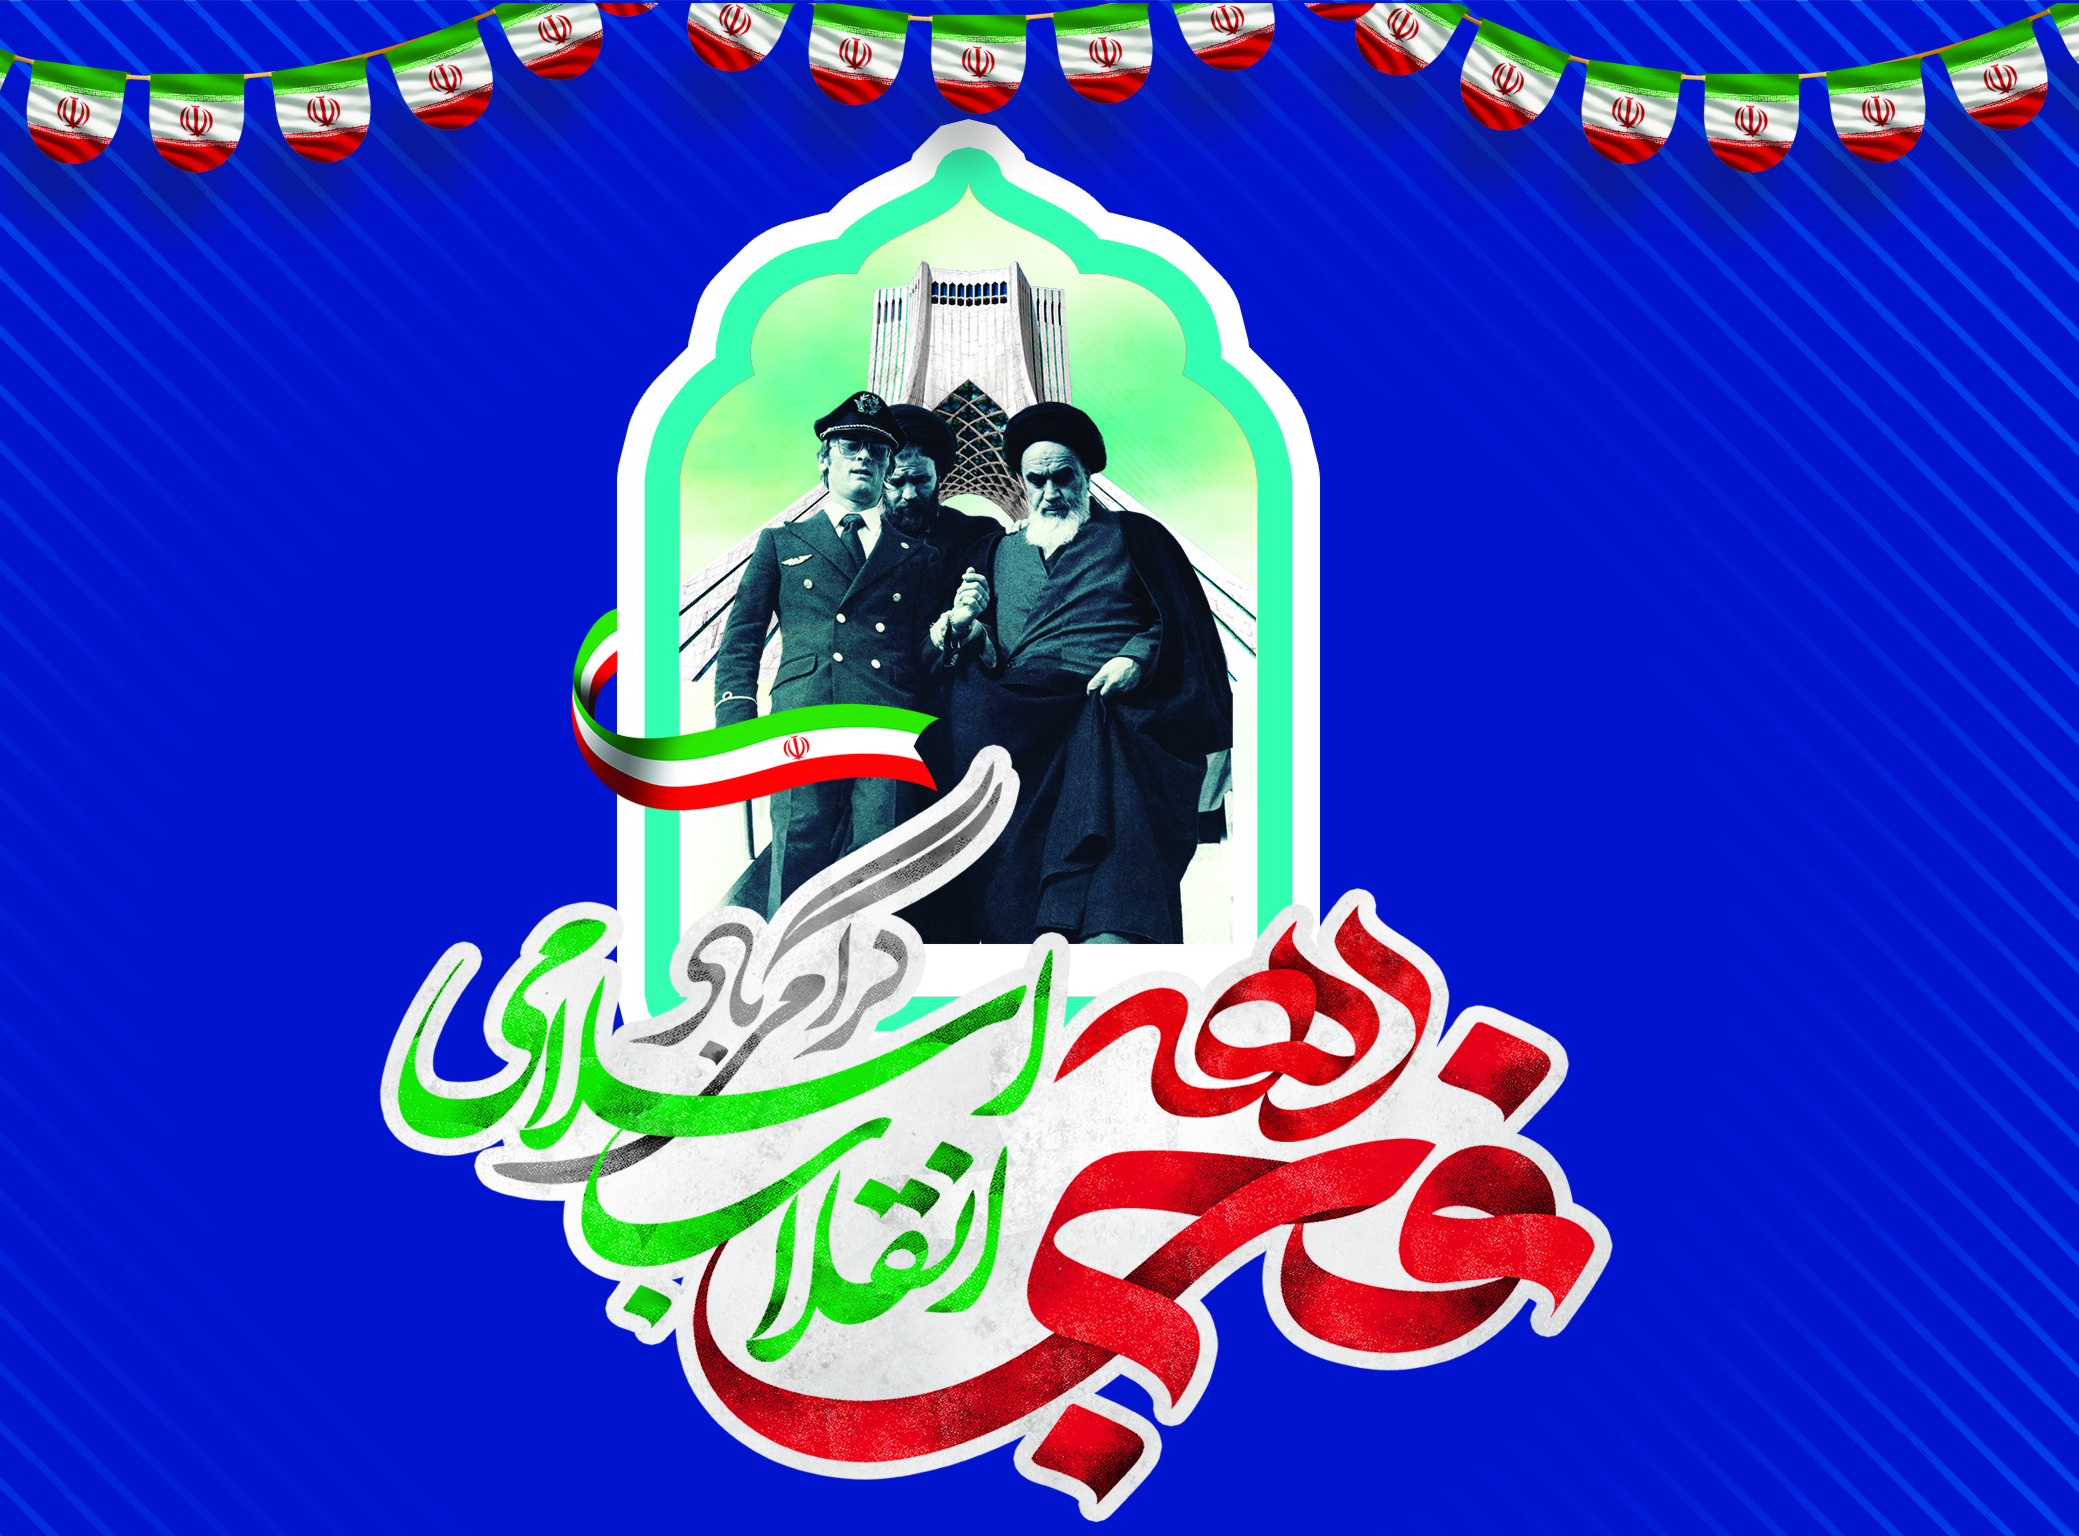 چهل و چهارمین سالگرد پیروزی شکوهمند انقلاب اسلامی ایران مبارک باد.